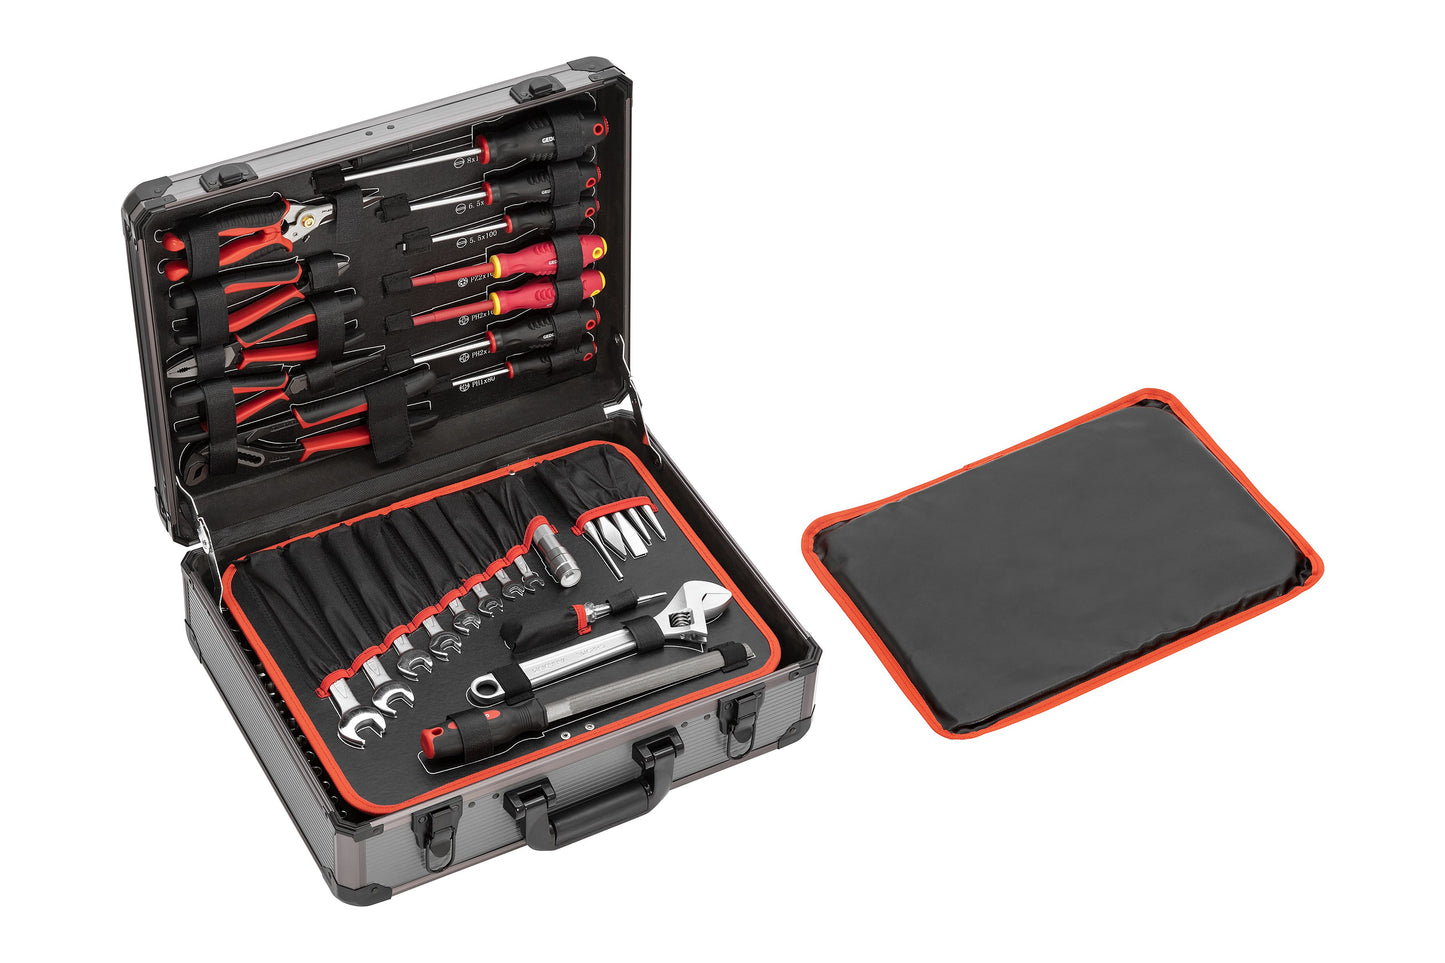 R46007138 - Juego de herramientas ALLROUND en maleta de aluminio, 138 piezas